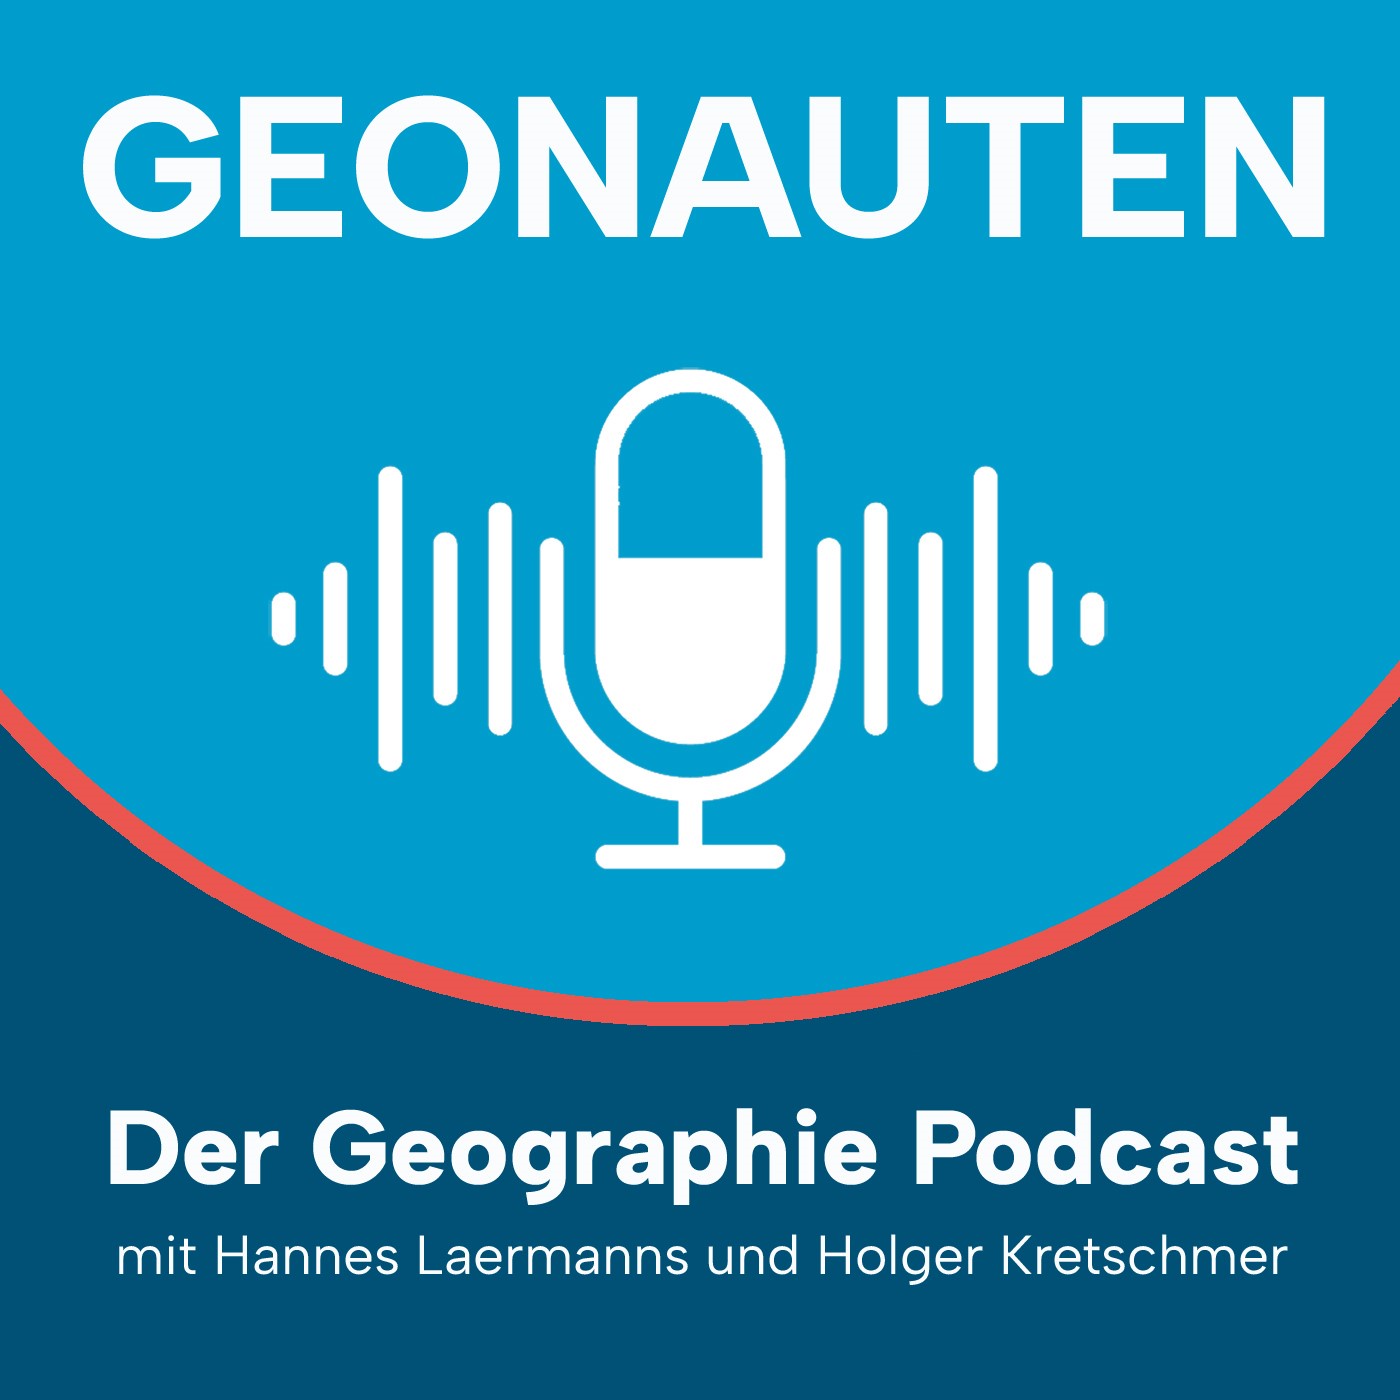 Geonauten Basics #3 – Living in the City